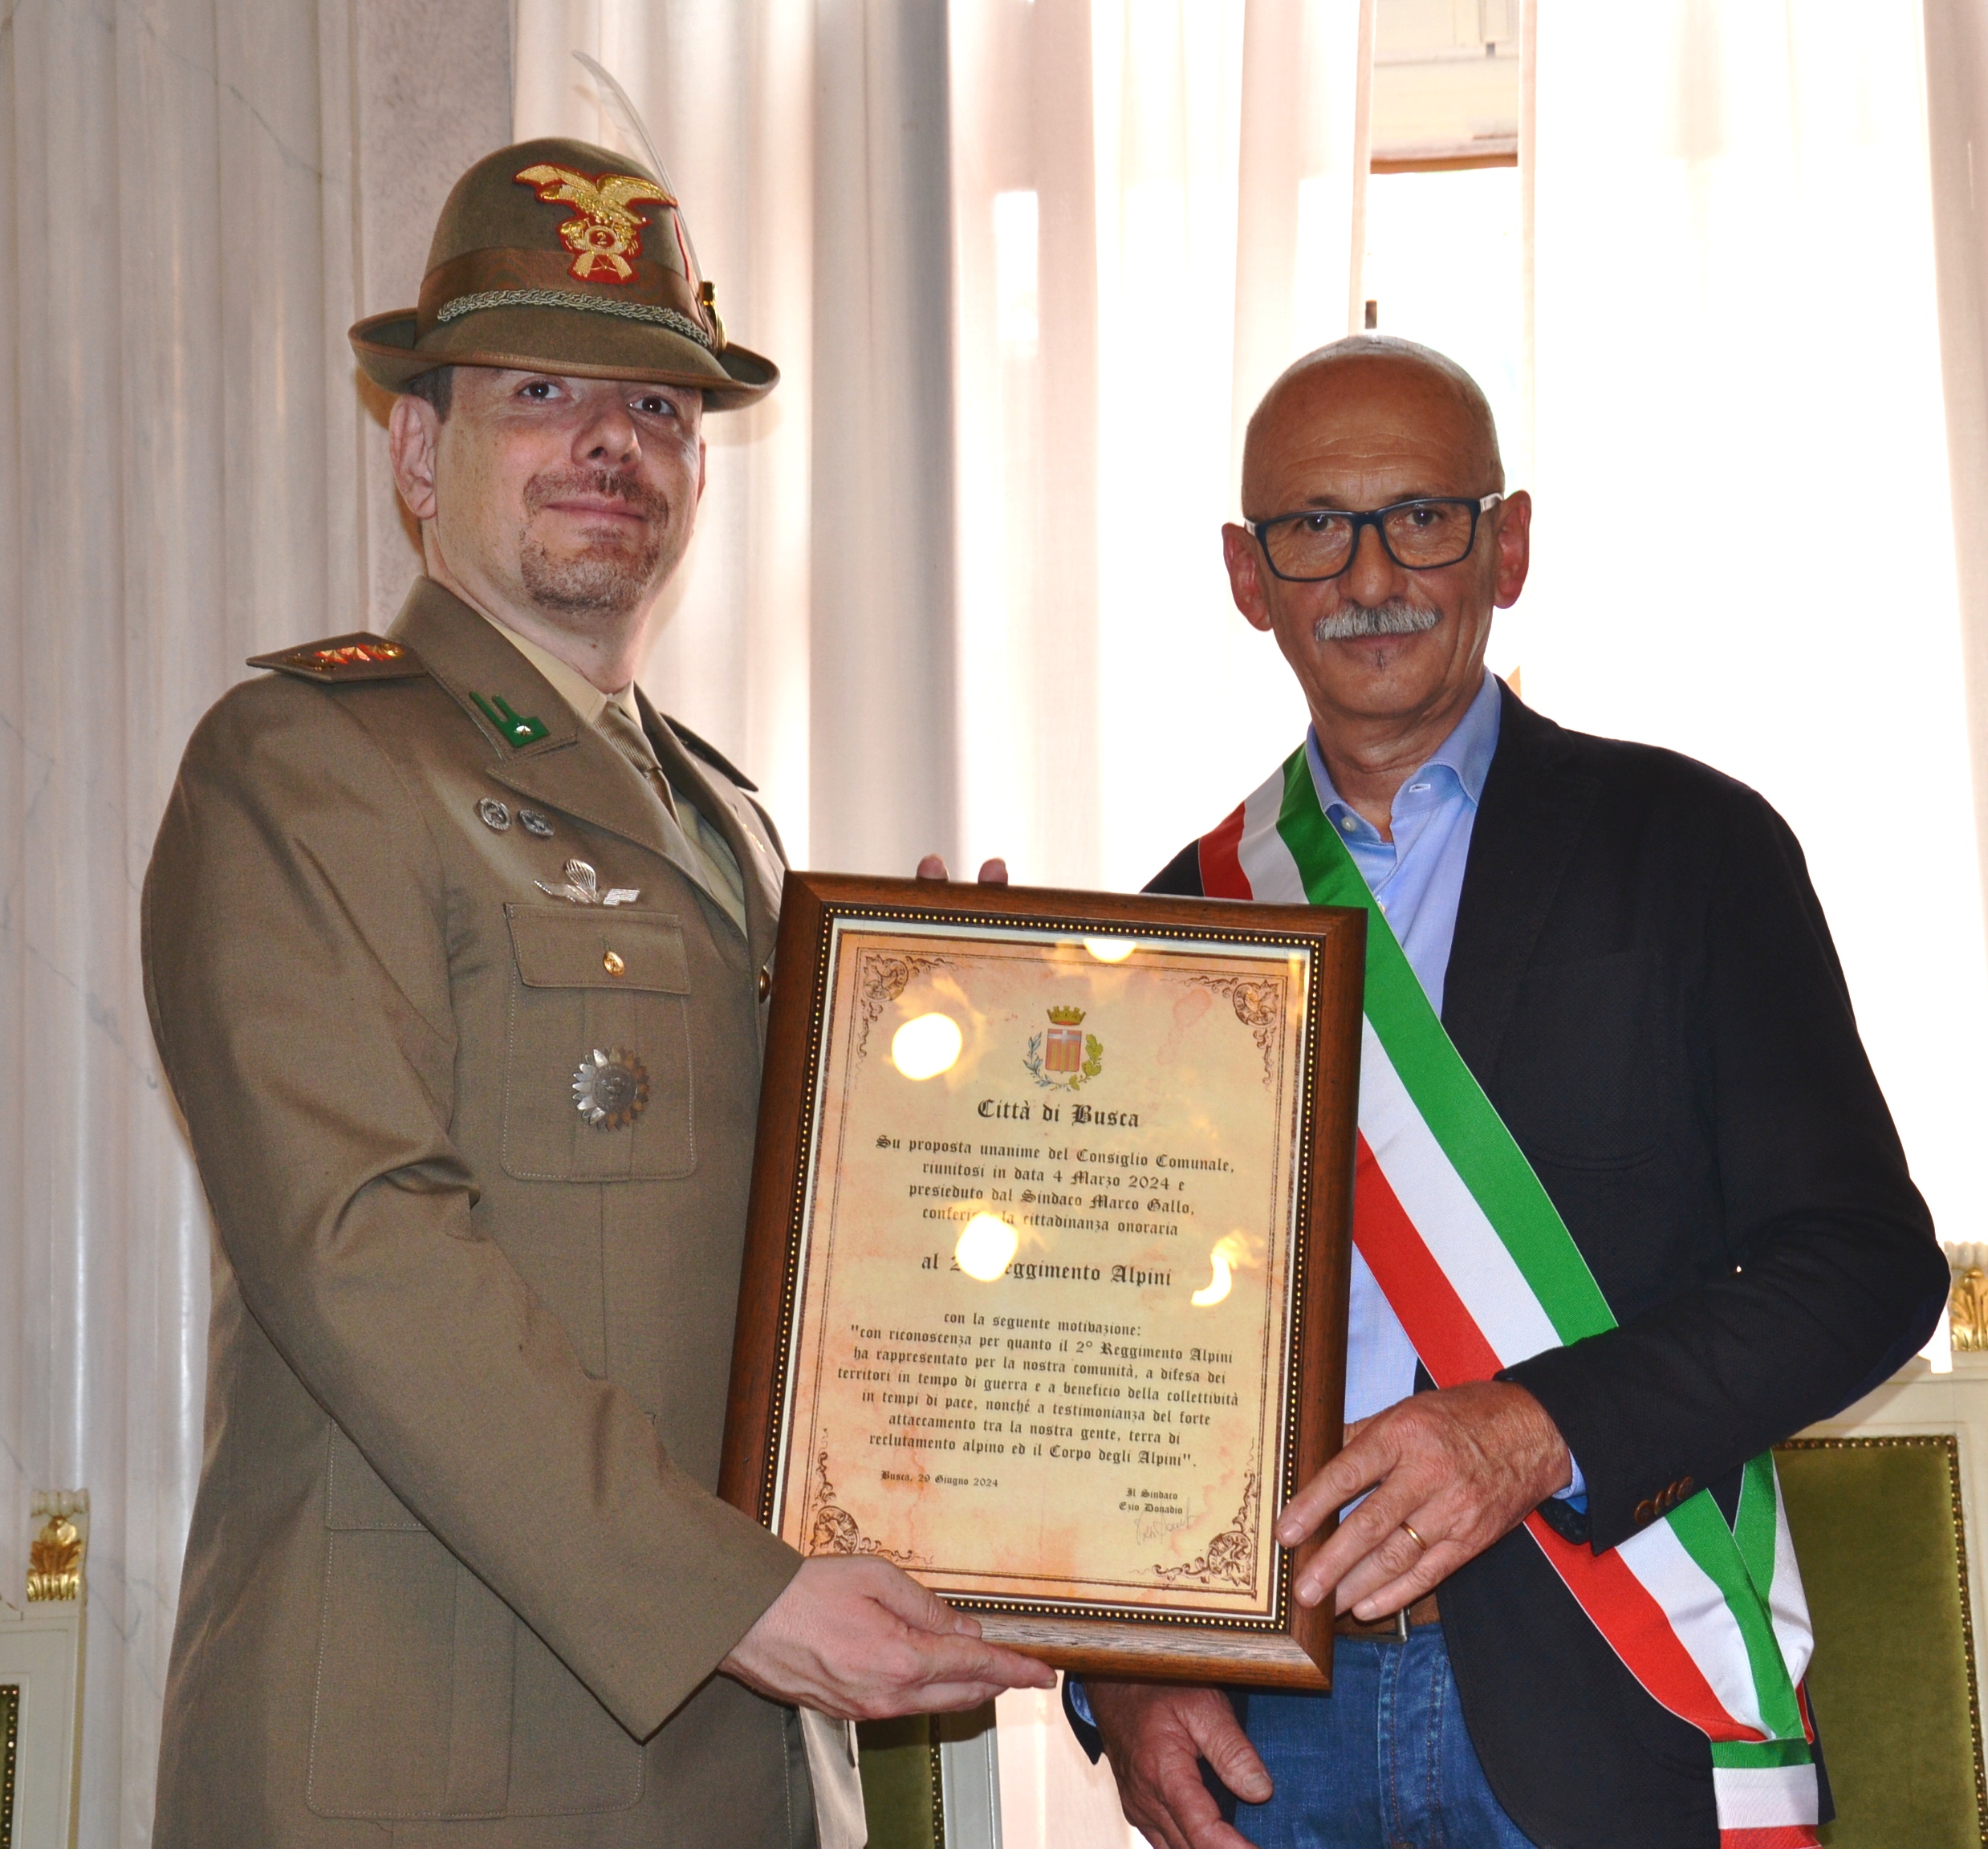 Il sindaco, Ezio Donadio, ha conferito la Cittadinanza onoraria al 2° Reggimento Alpini di stanza a Cuneo, San Rocco Castagnaretta, nelle mani del comandate colonnello Massimiliano Fassero